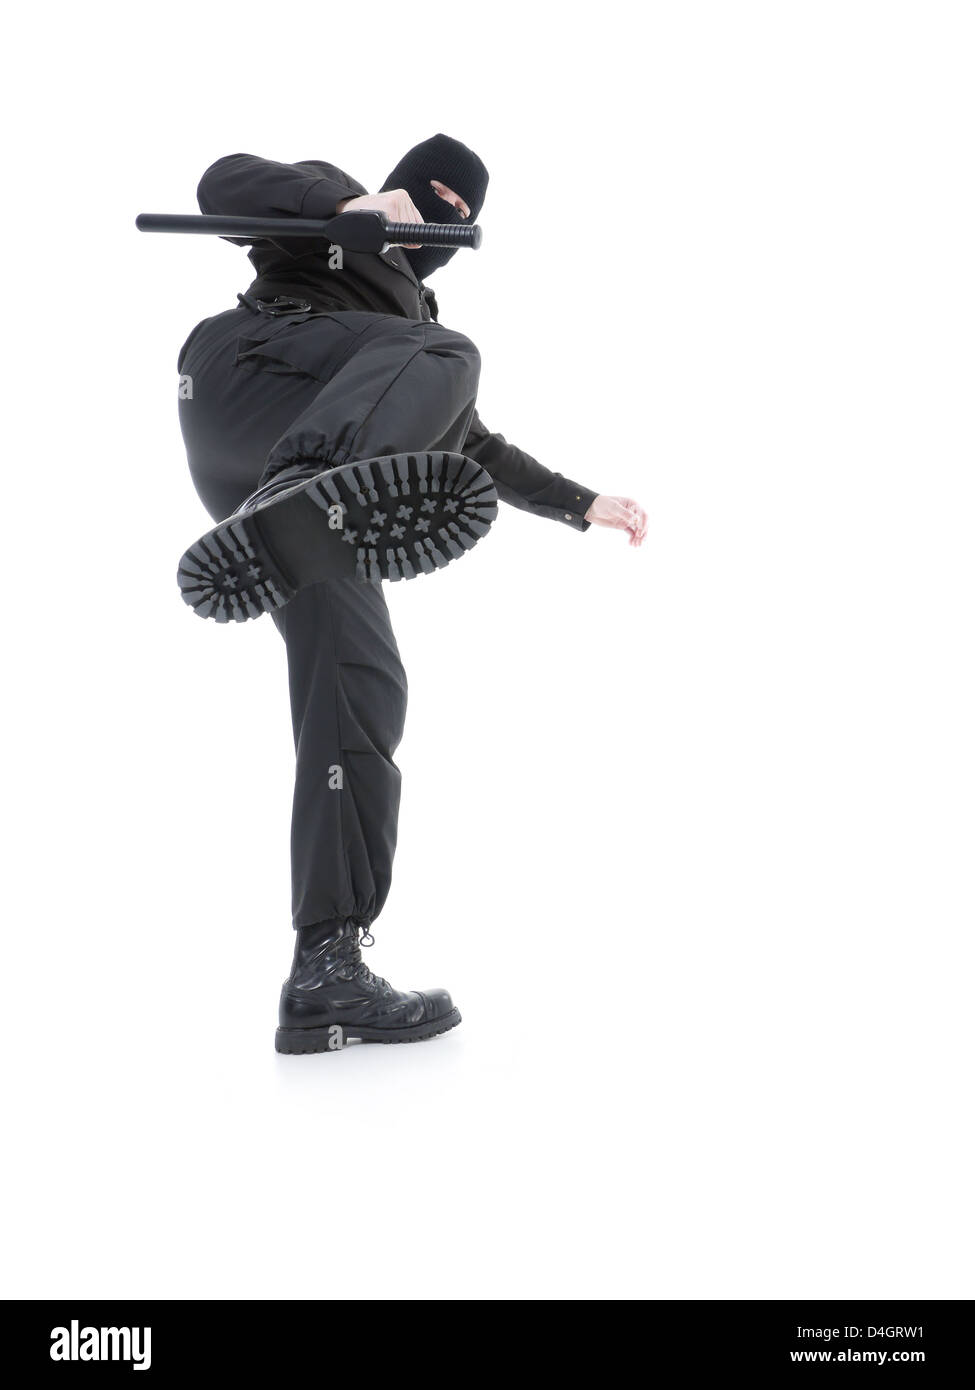 La police anti-terroriste mec uniforme noir et masque noir faisant un Side Kick, shot on white Banque D'Images